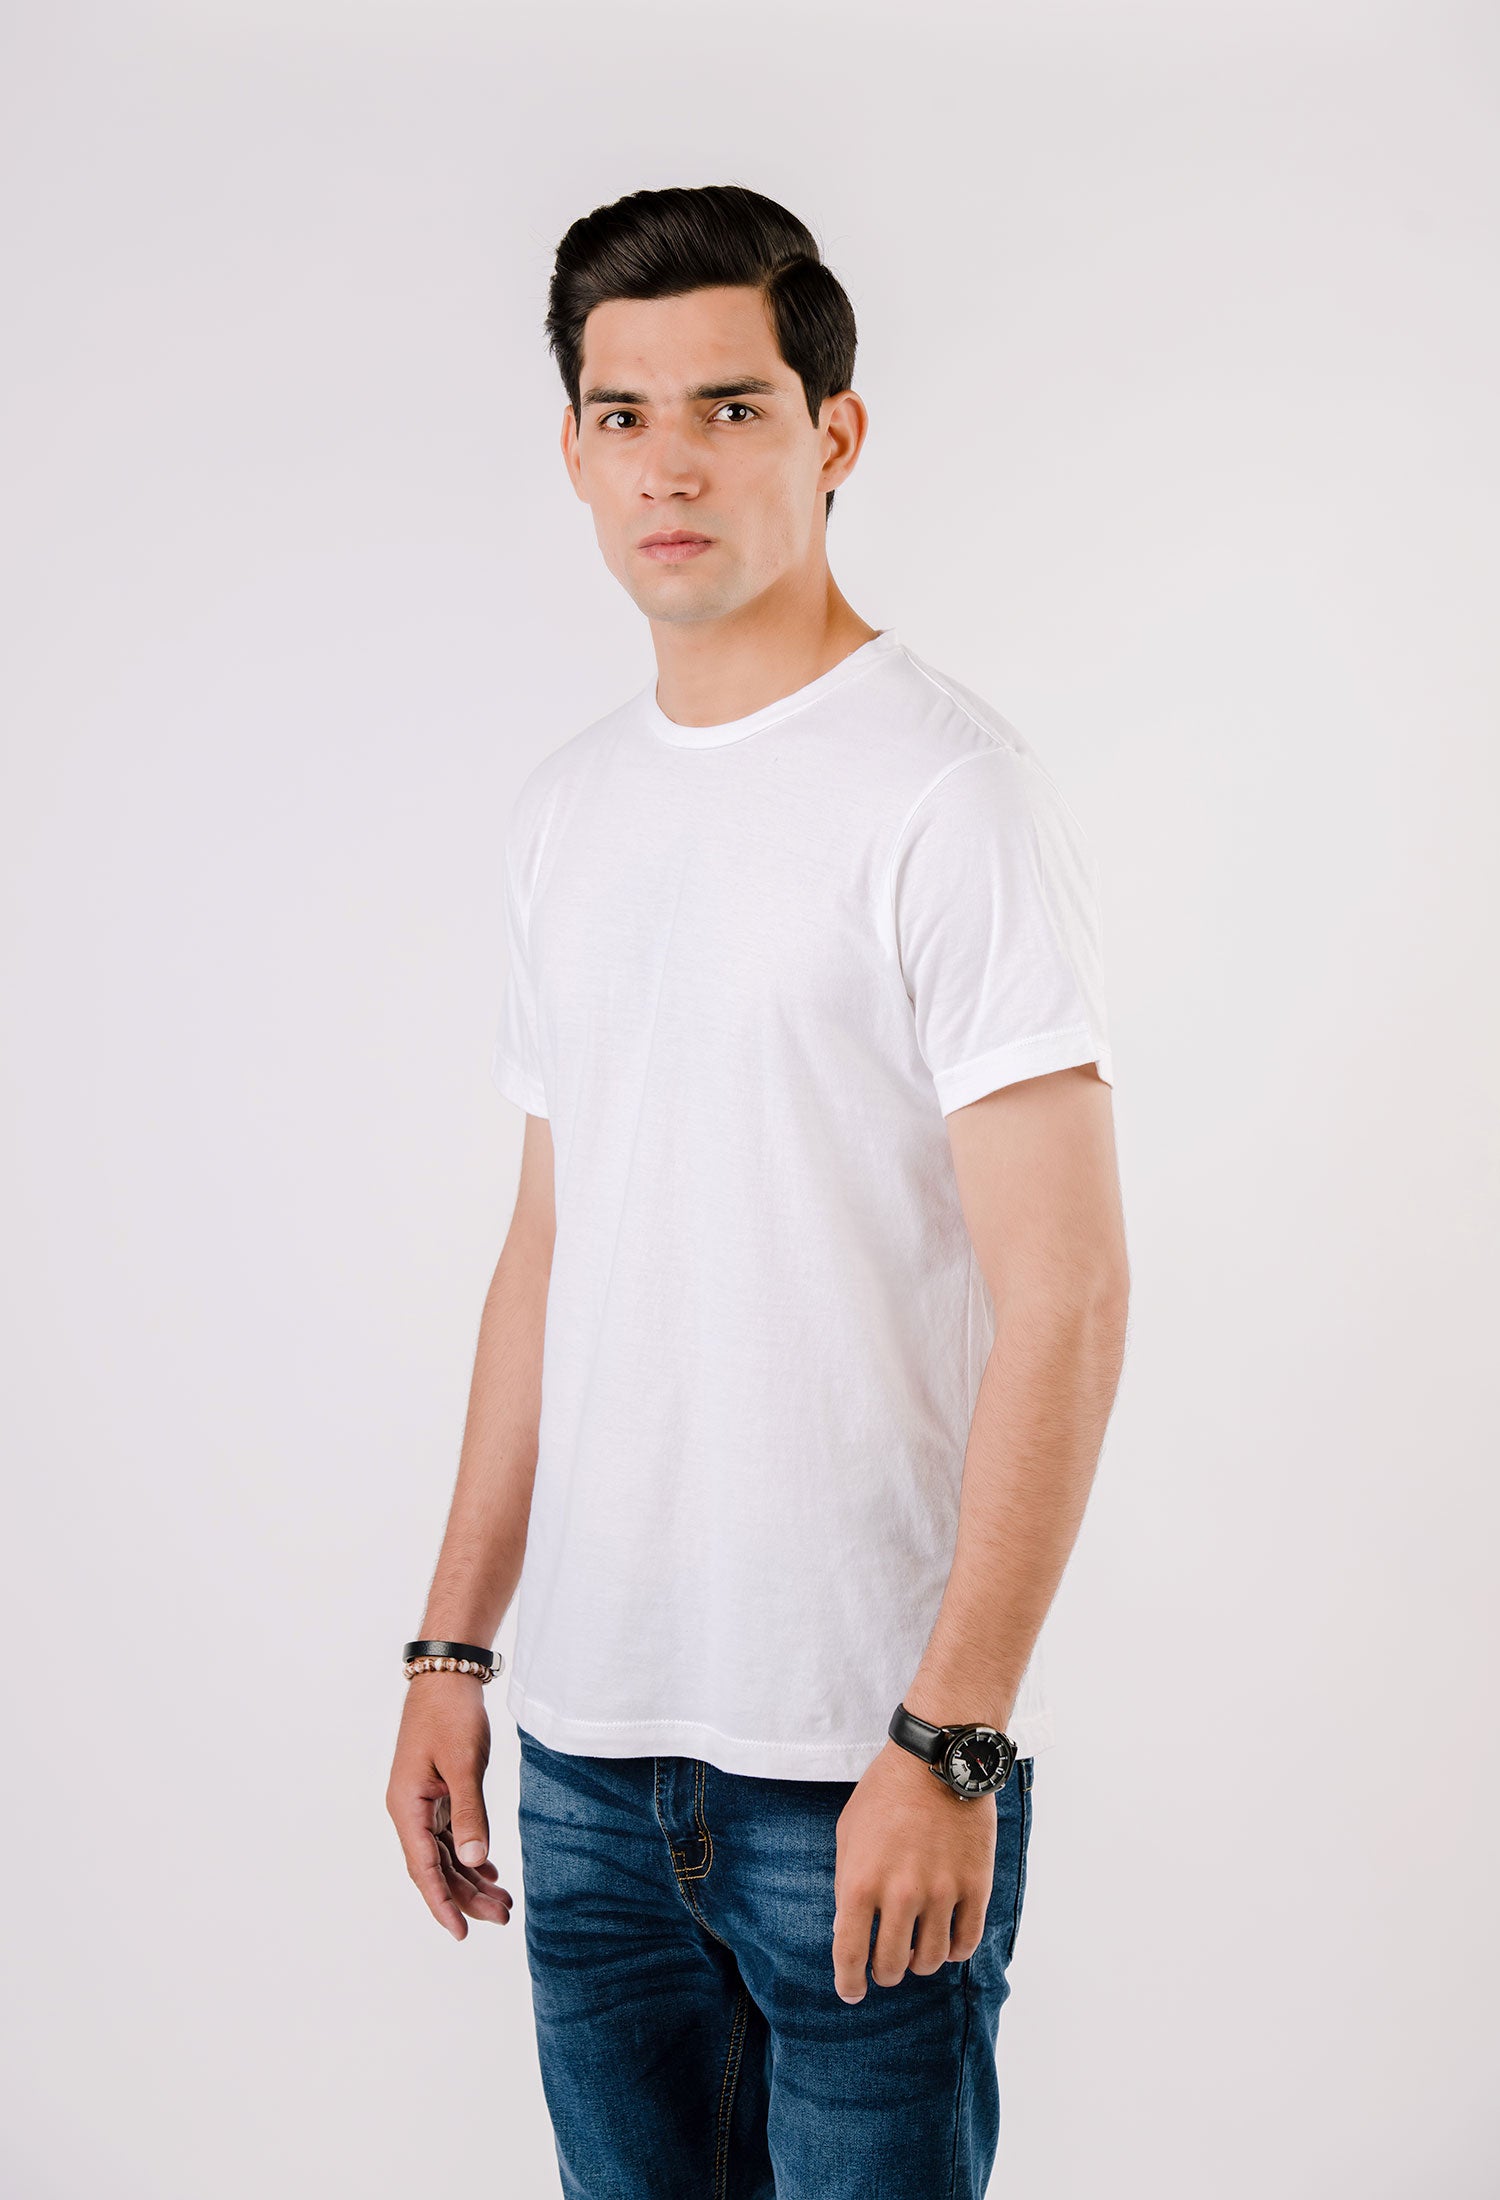 White Basic T-Shirt (T-SHB-0001)